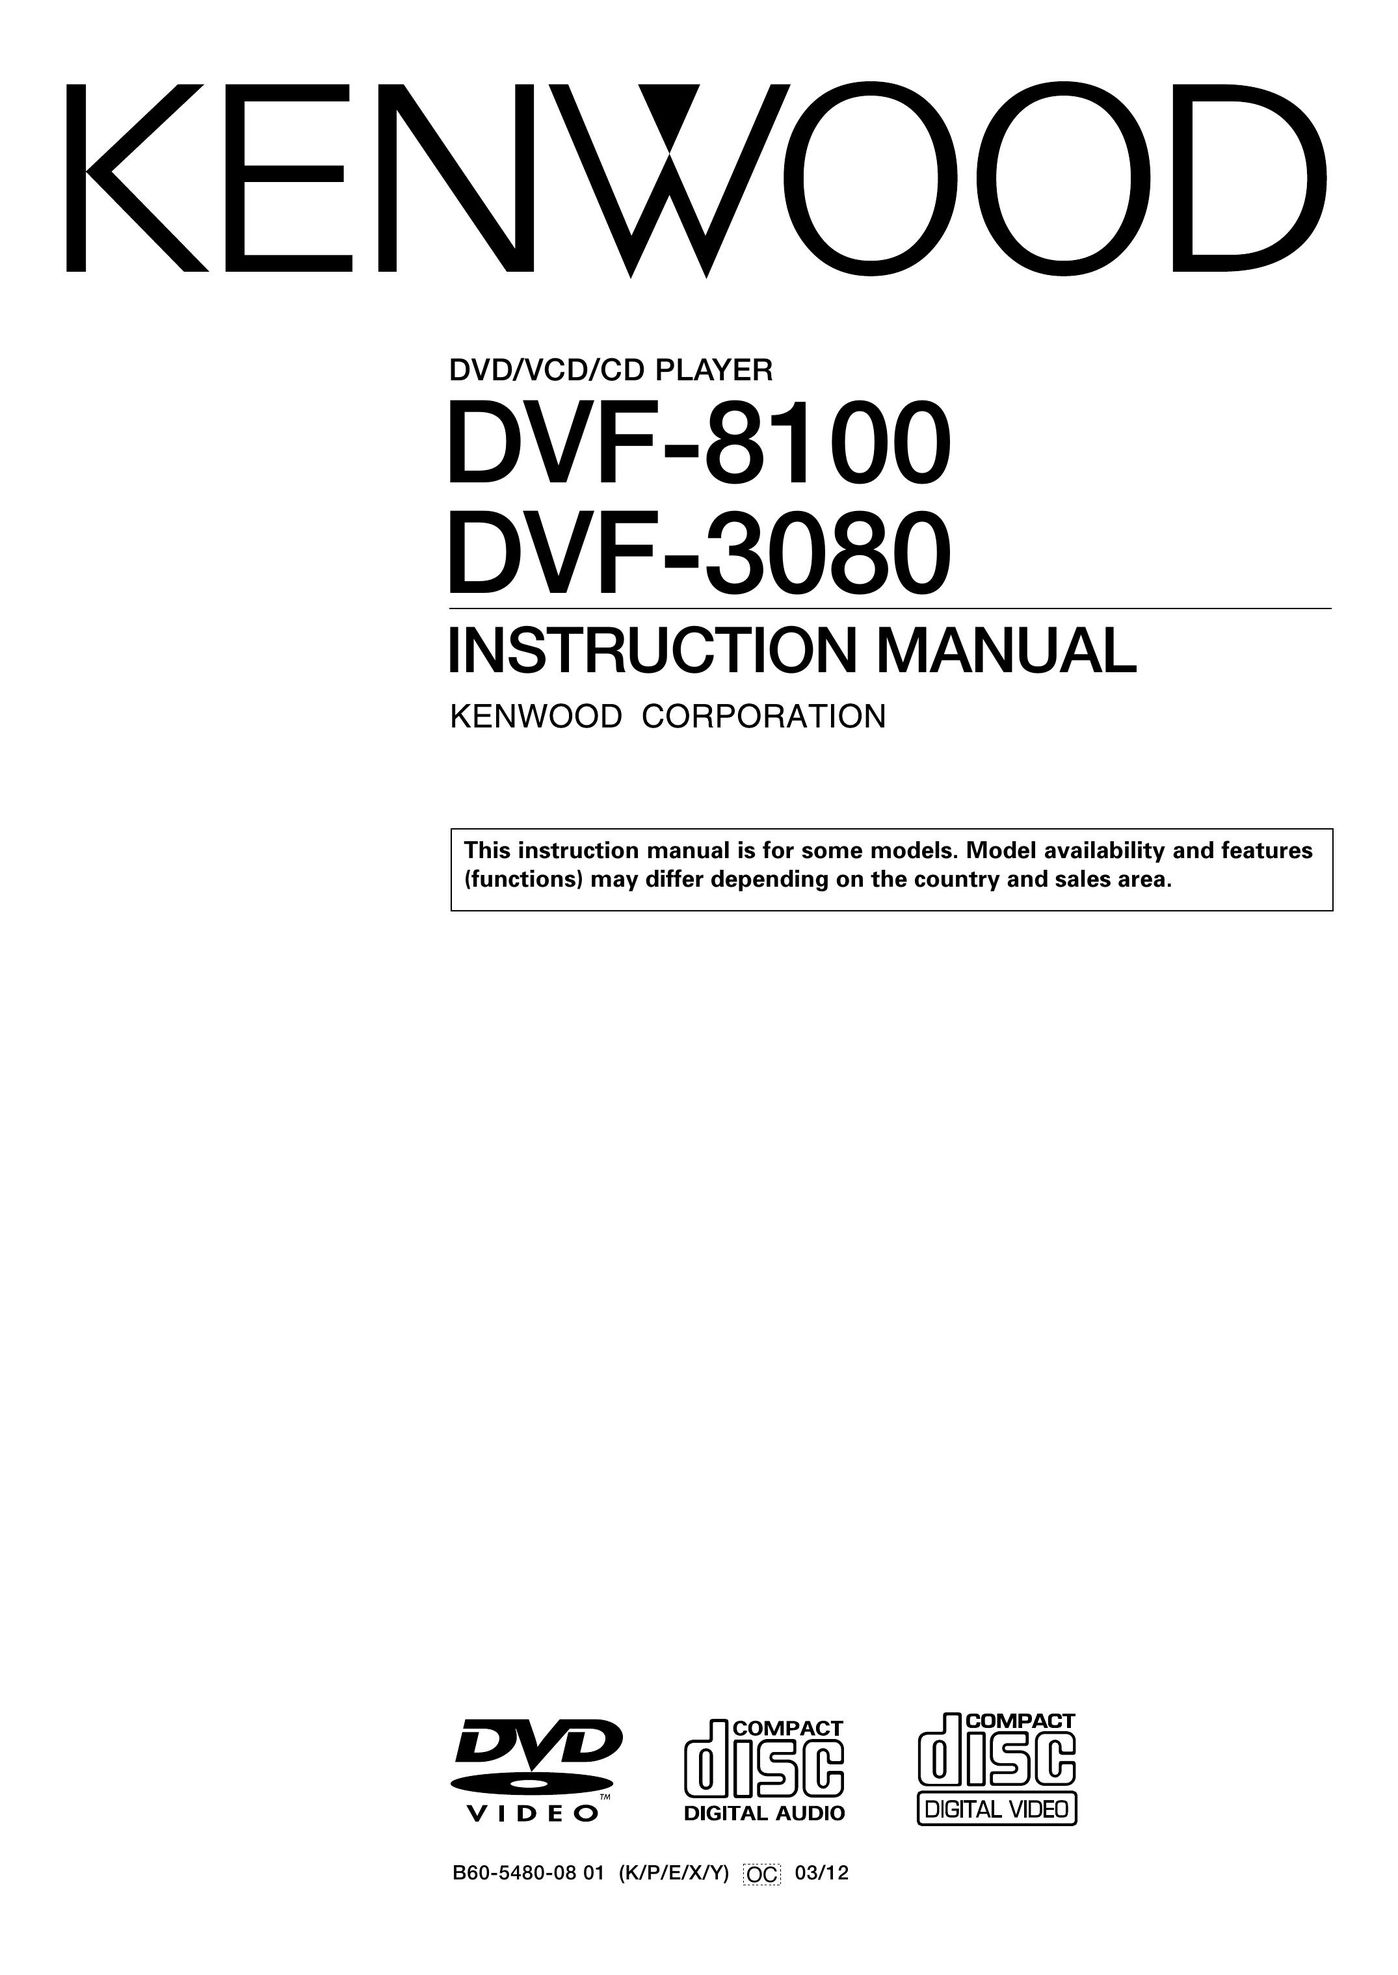 Kenwood DVF-8100 DVD Player User Manual